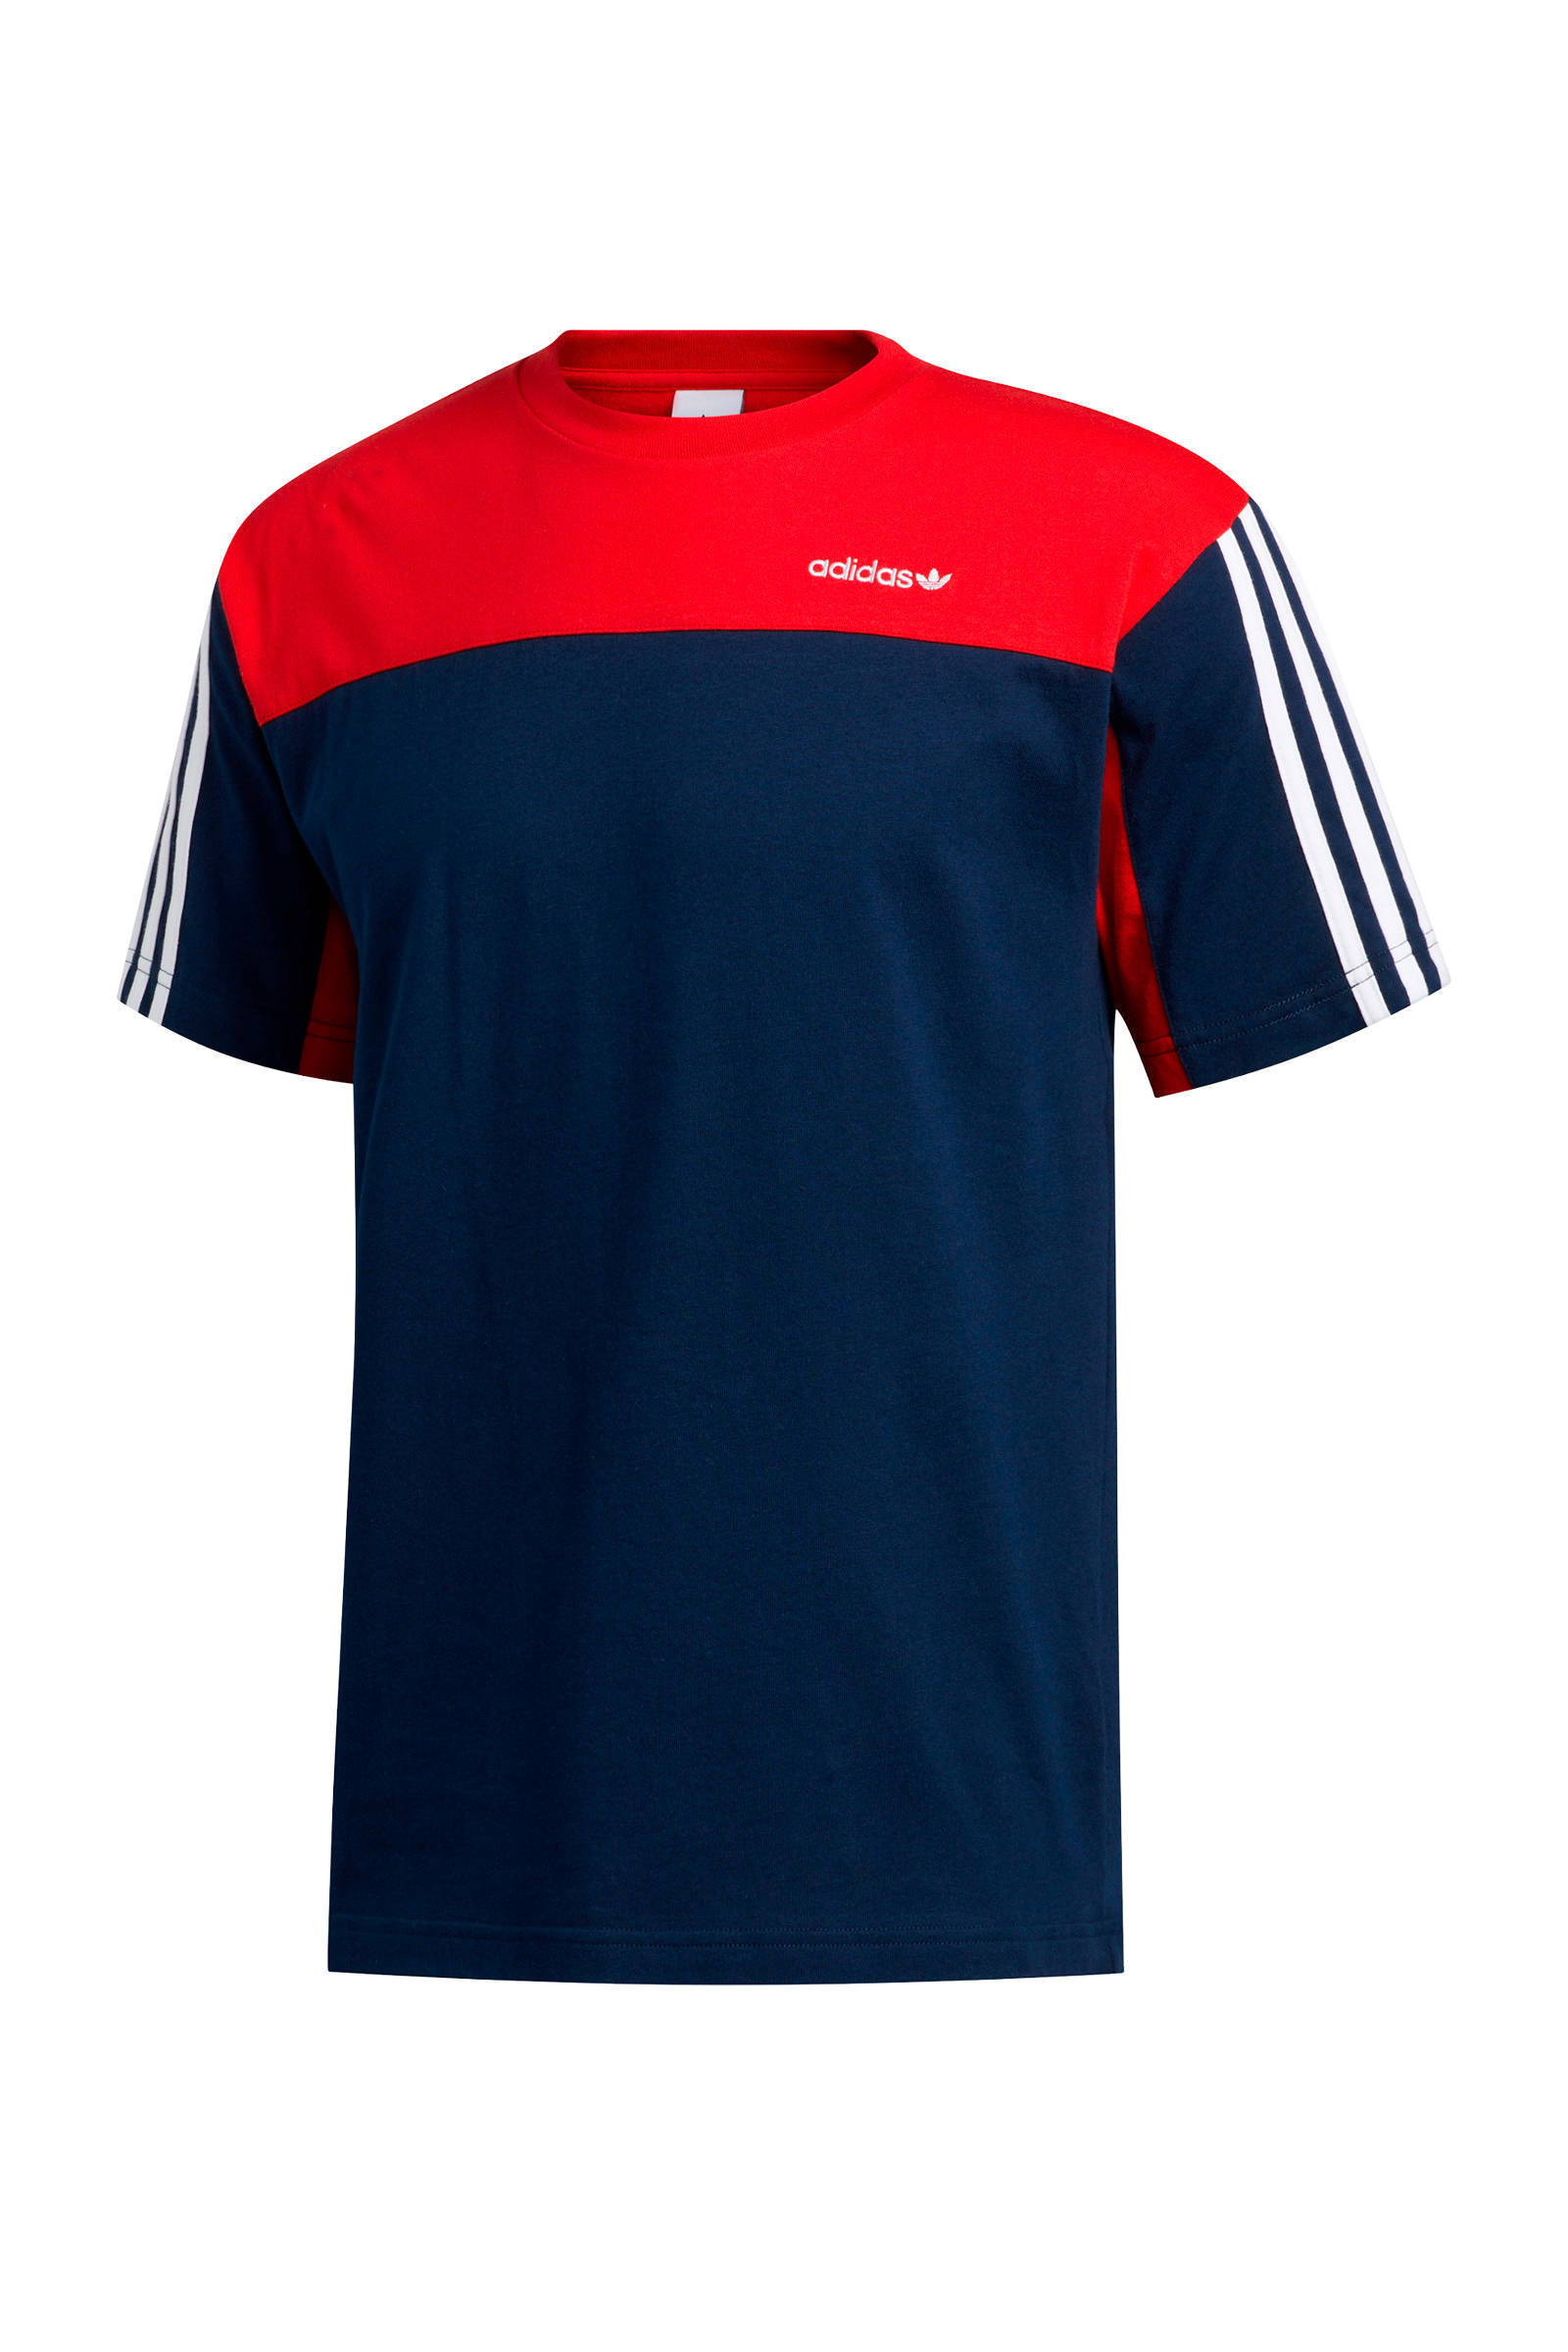 Adidas Originals T-shirt donkerblauw/rood online kopen